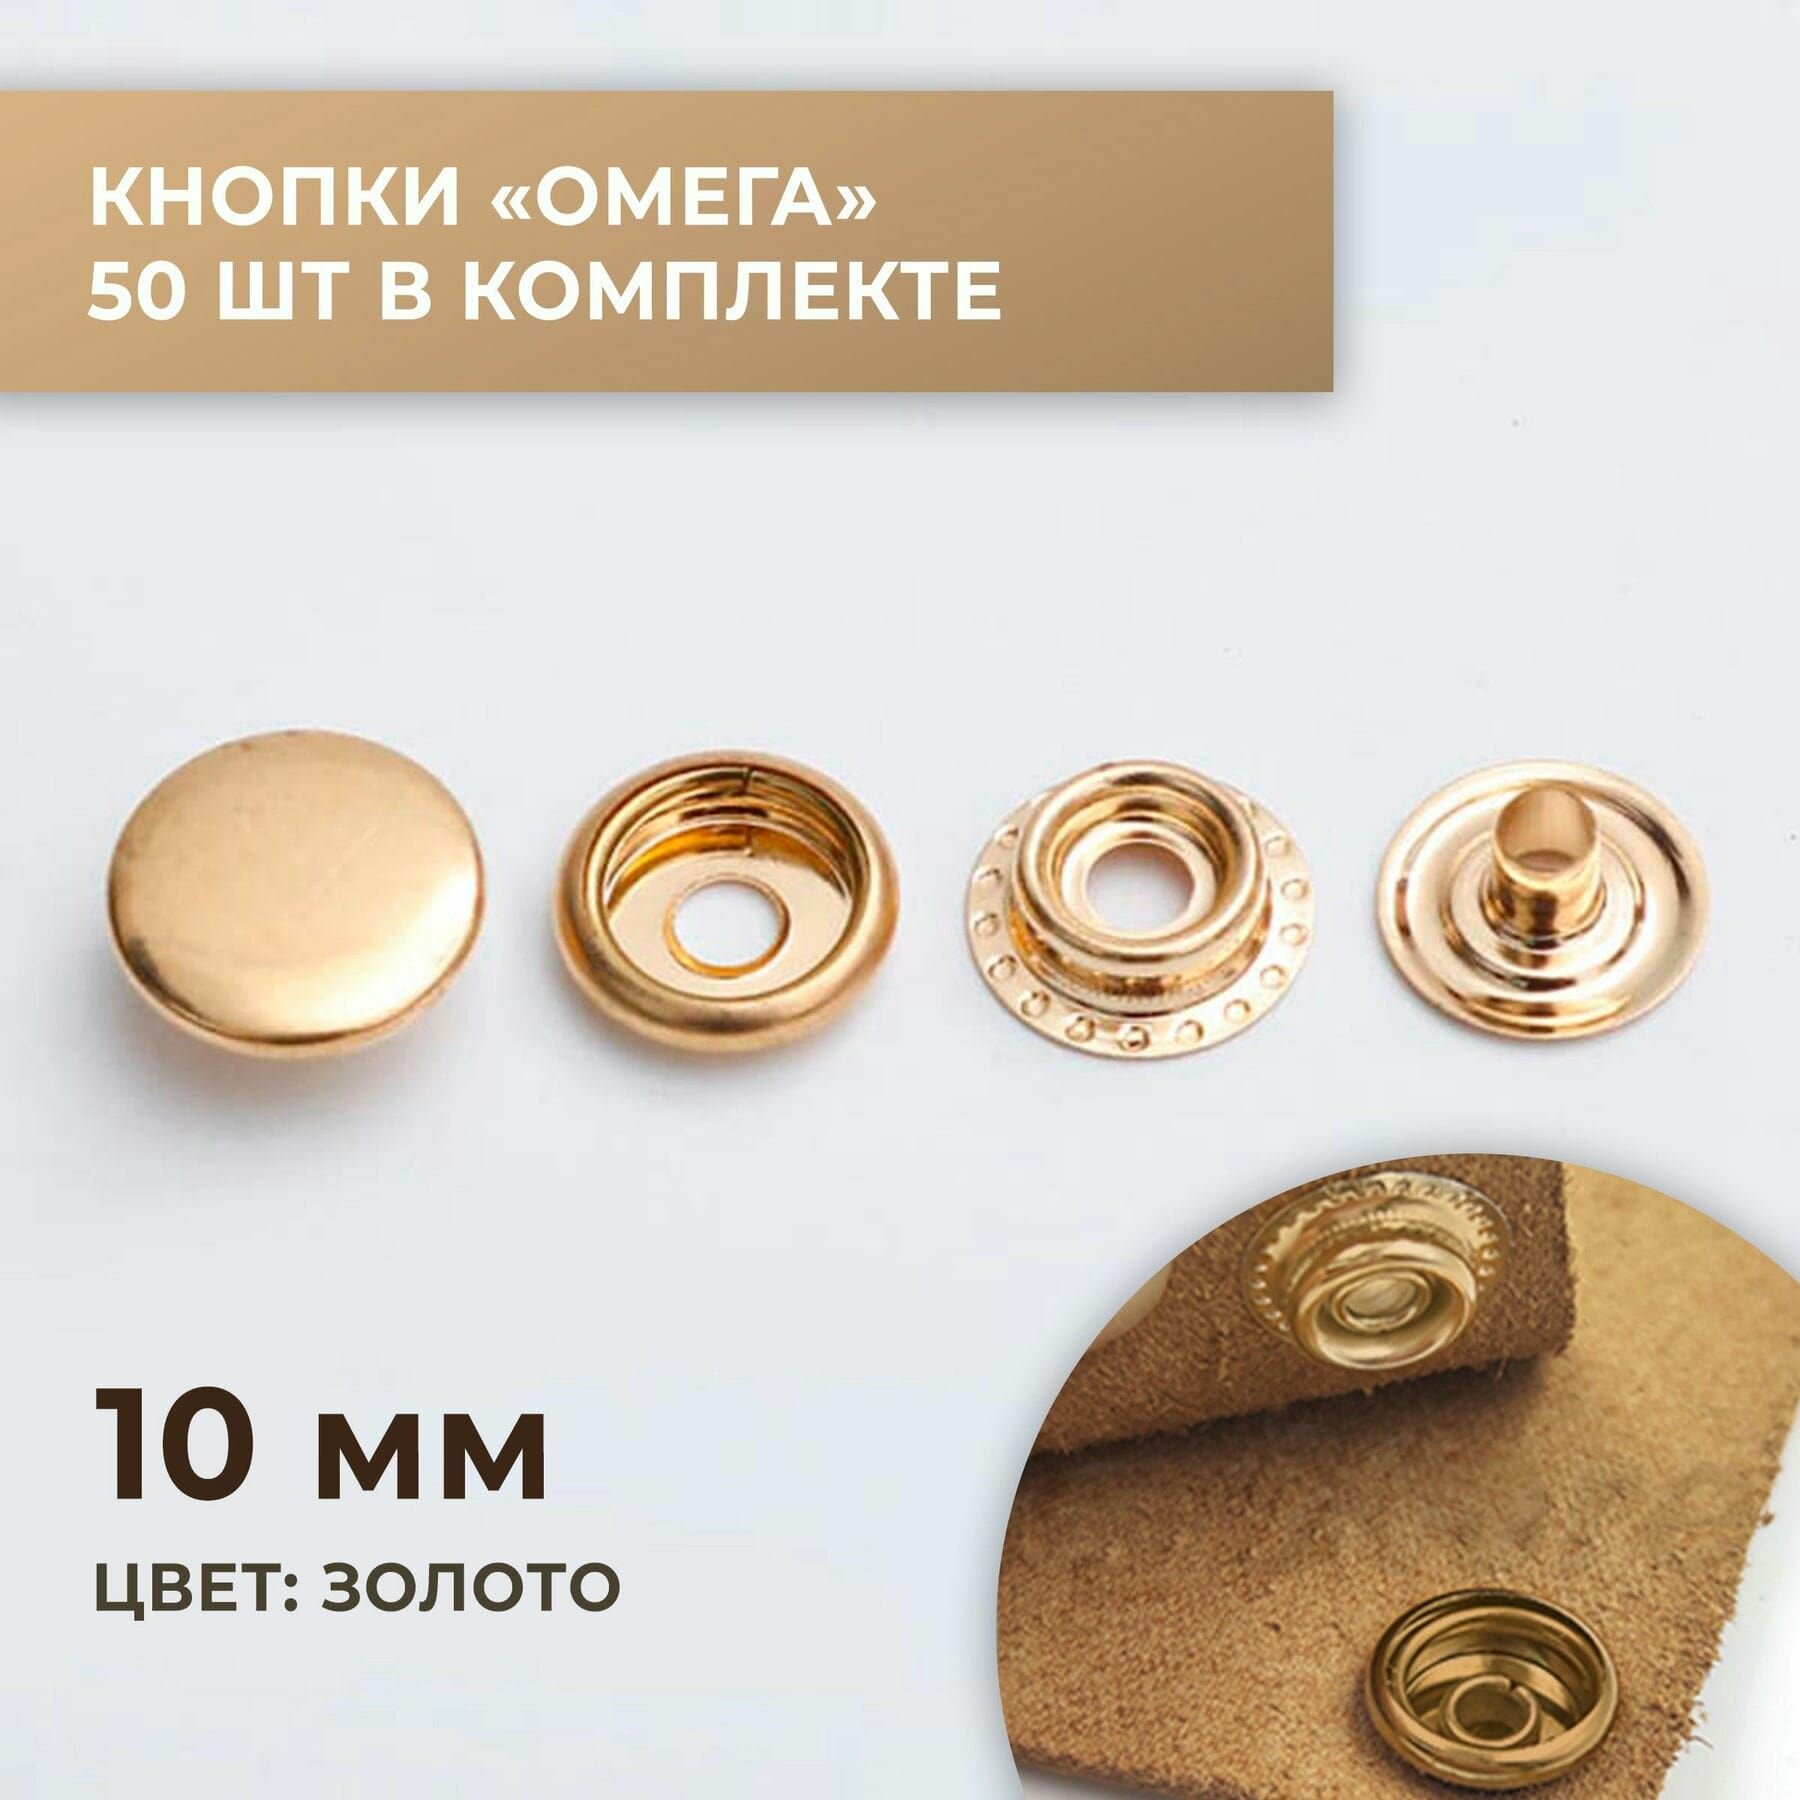 Кнопки "Омега", 10 мм, золото, 50 шт